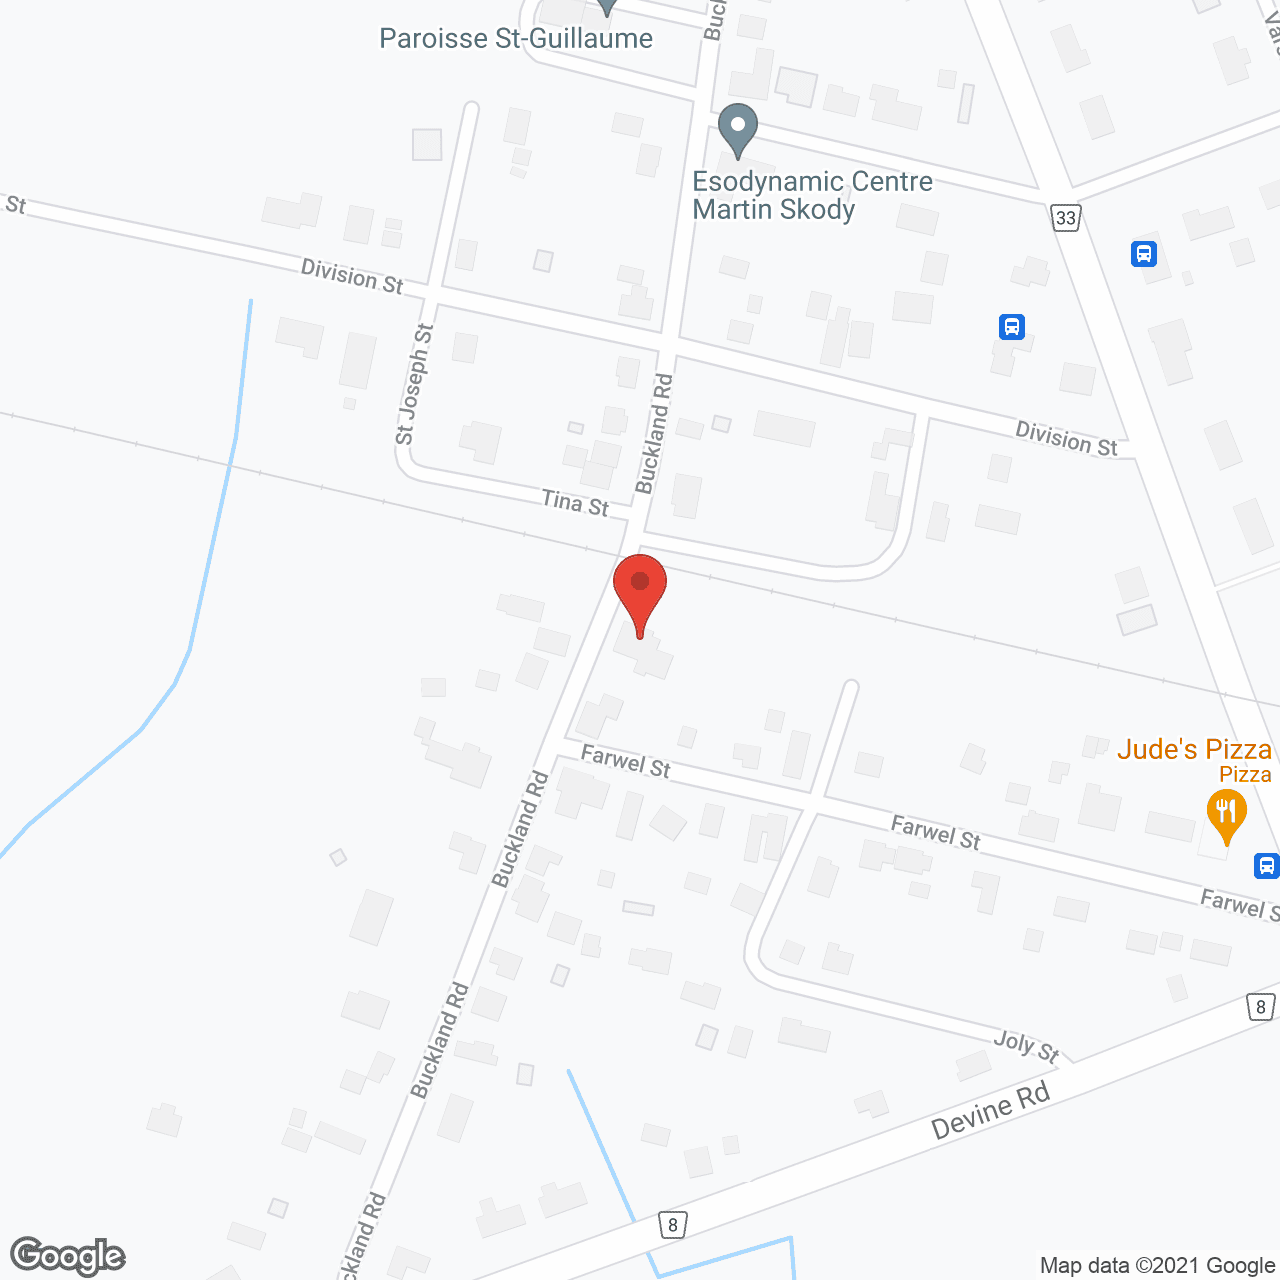 Residence St Francois in google map